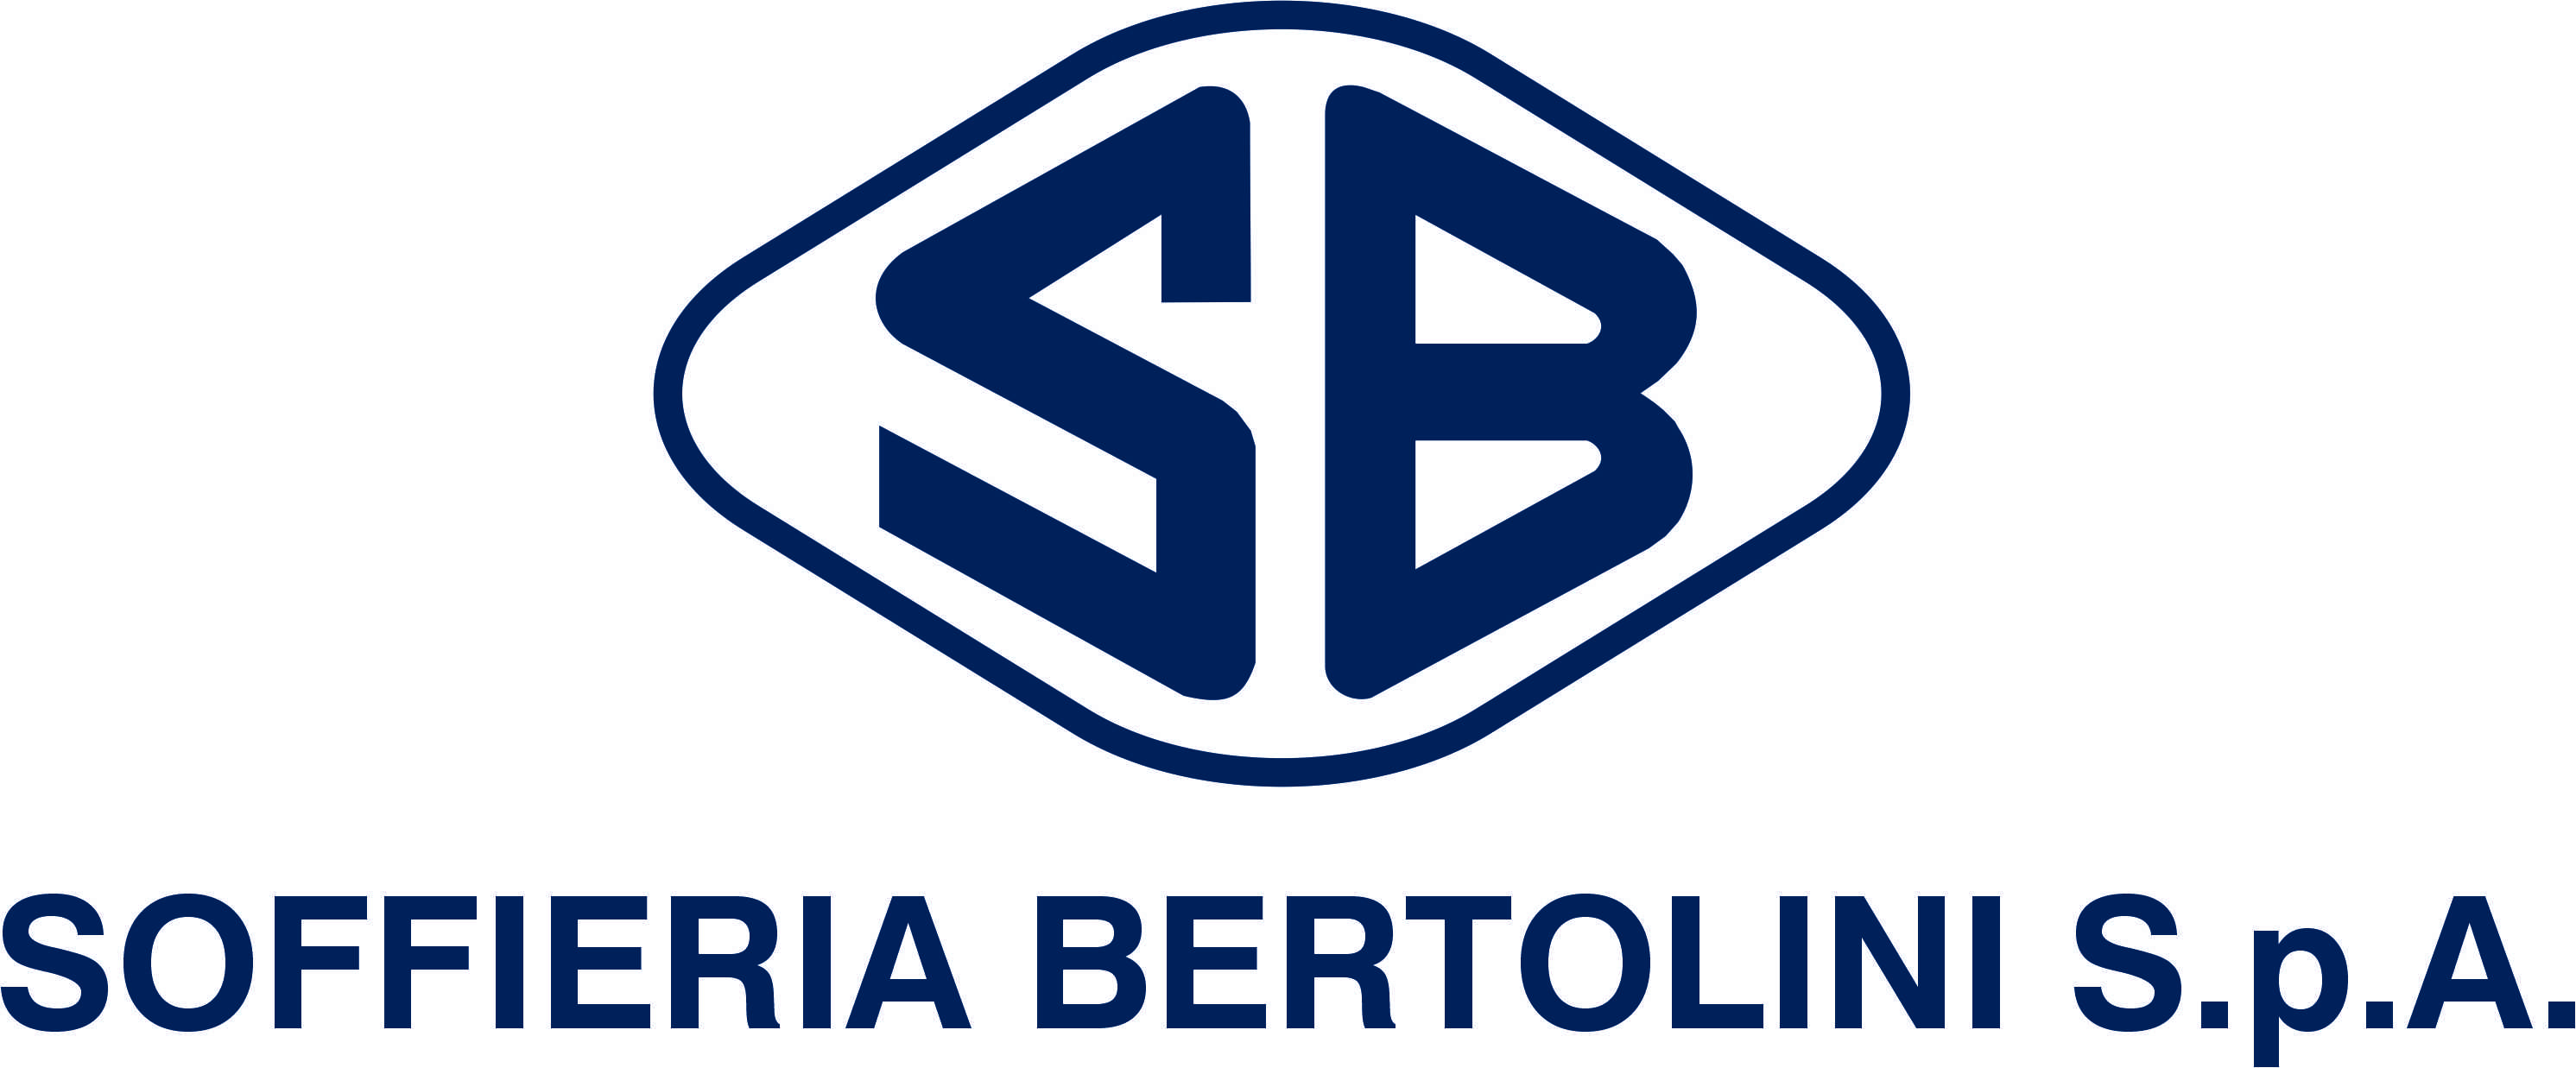 Soffieria Bertolini S.p.A.